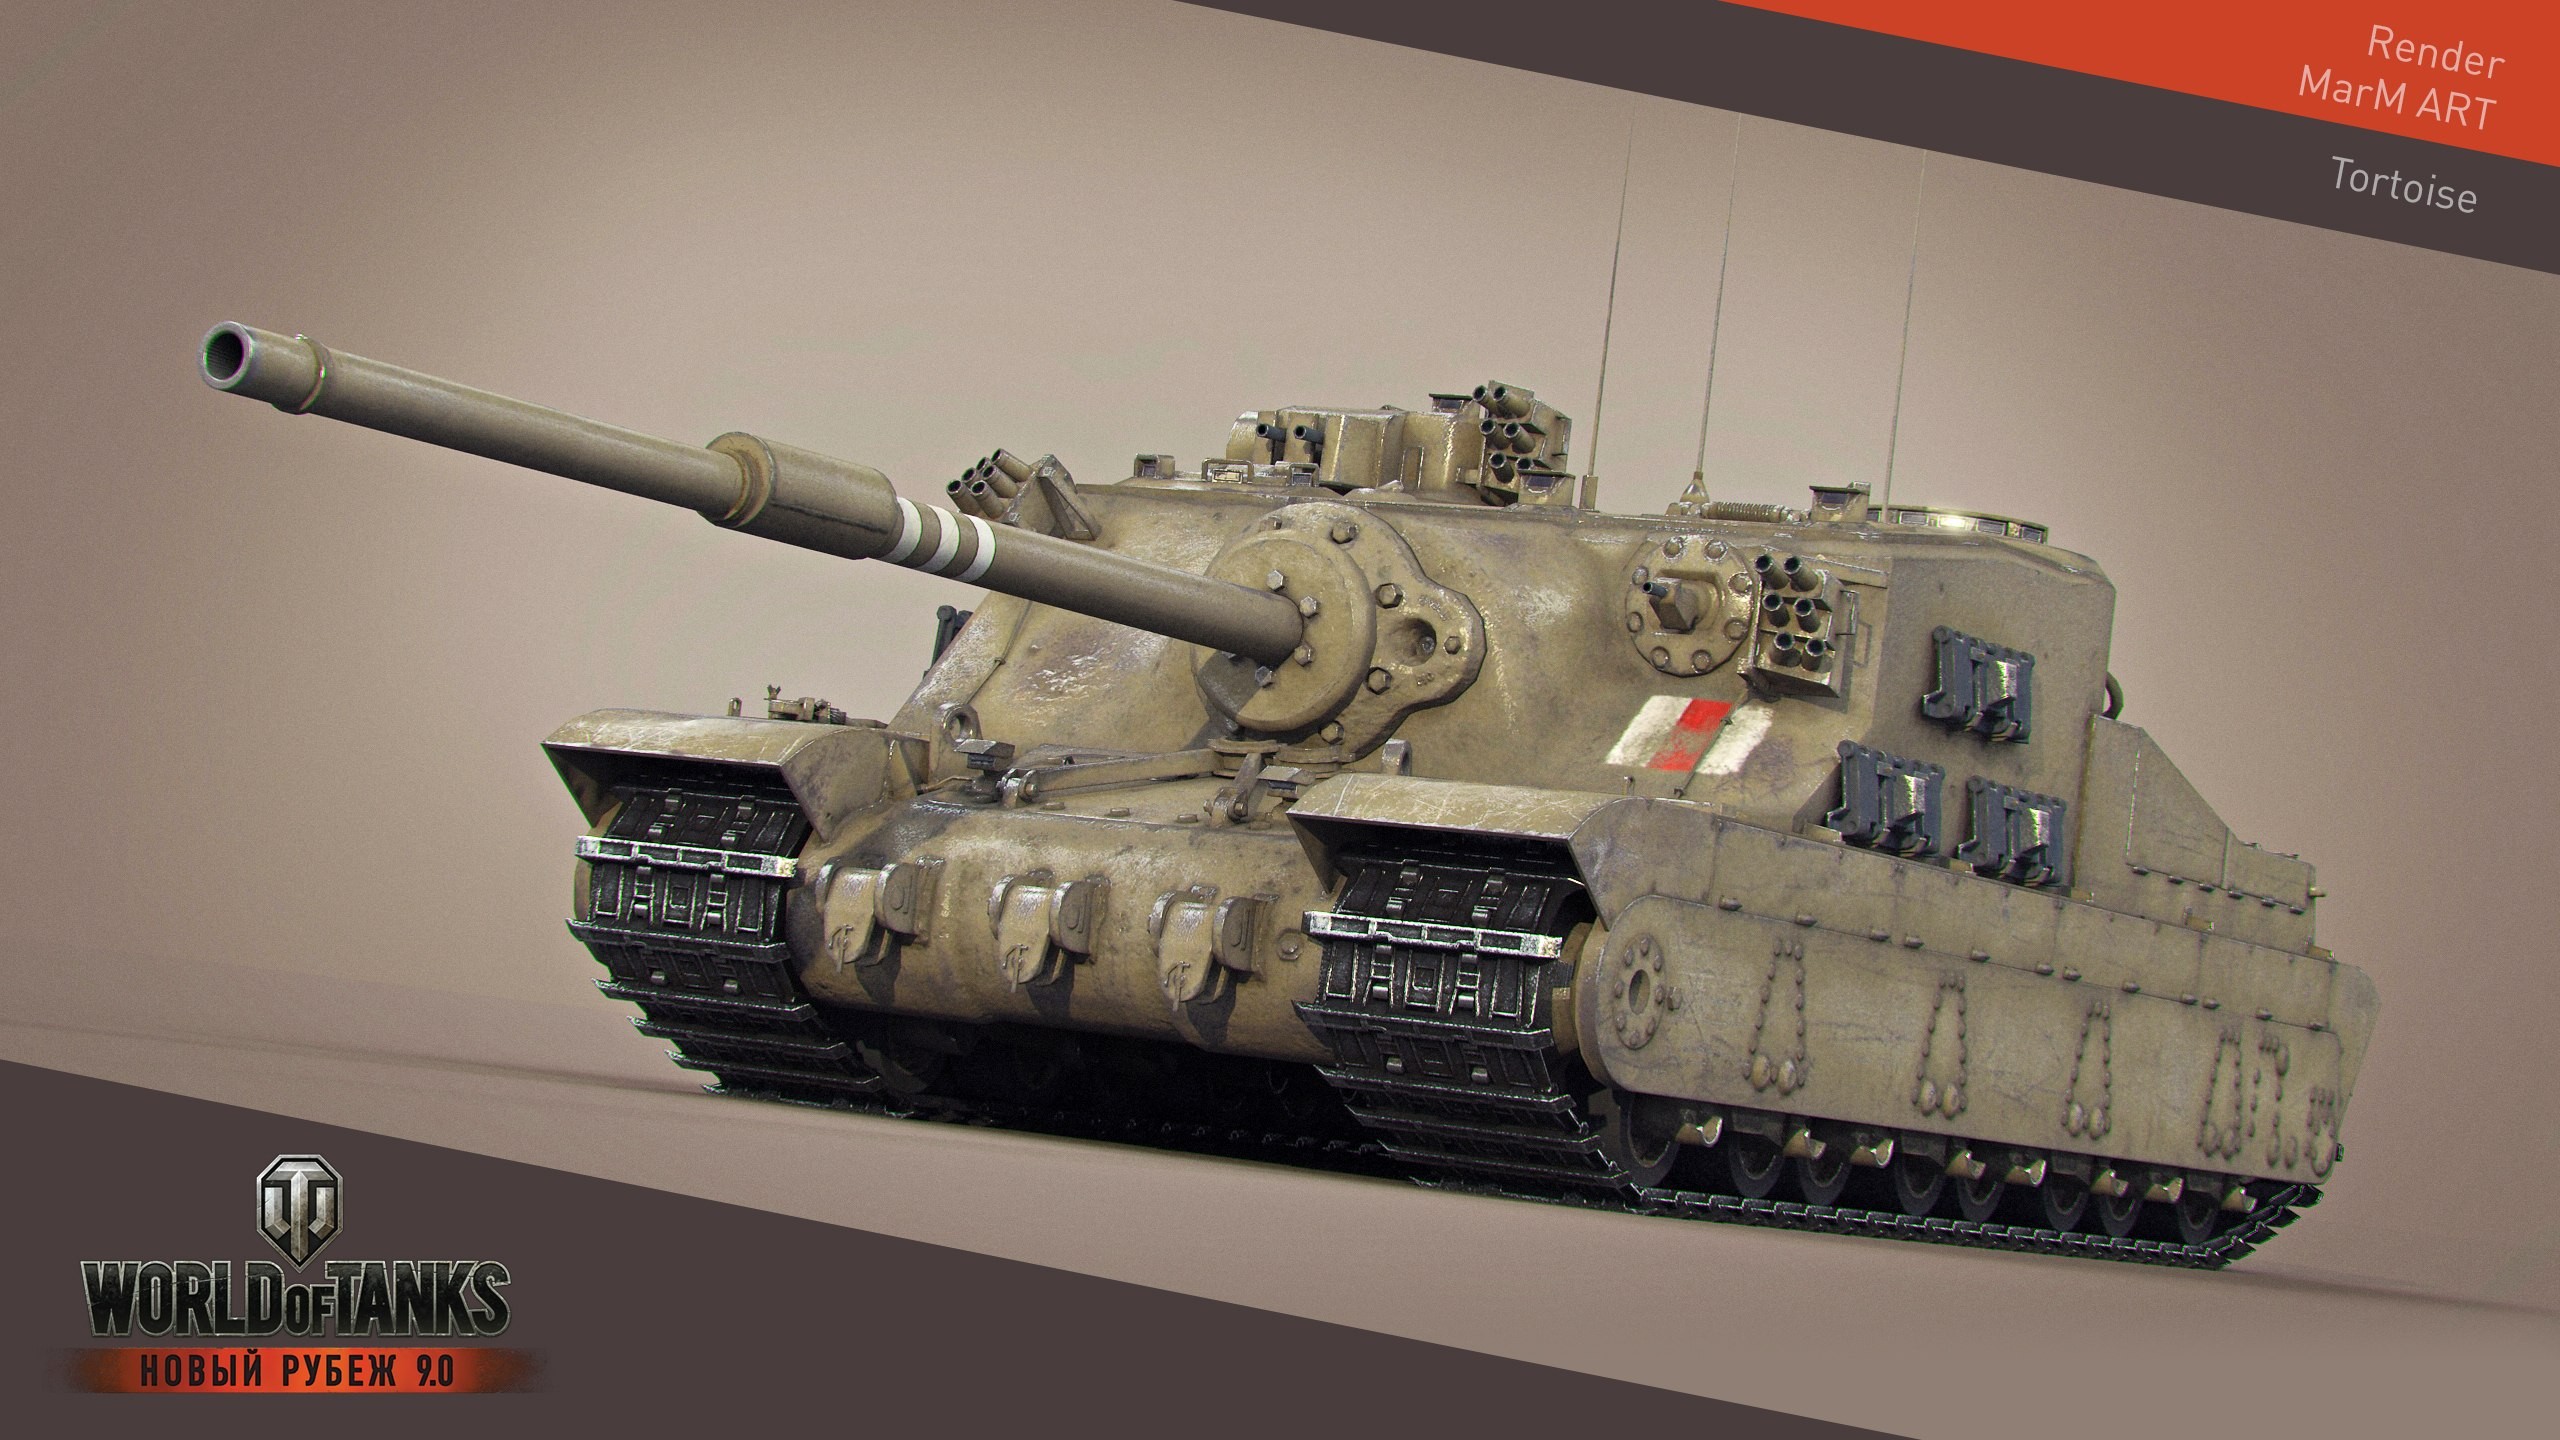 General 2560x1440 World of Tanks tank wargaming video games British tanks